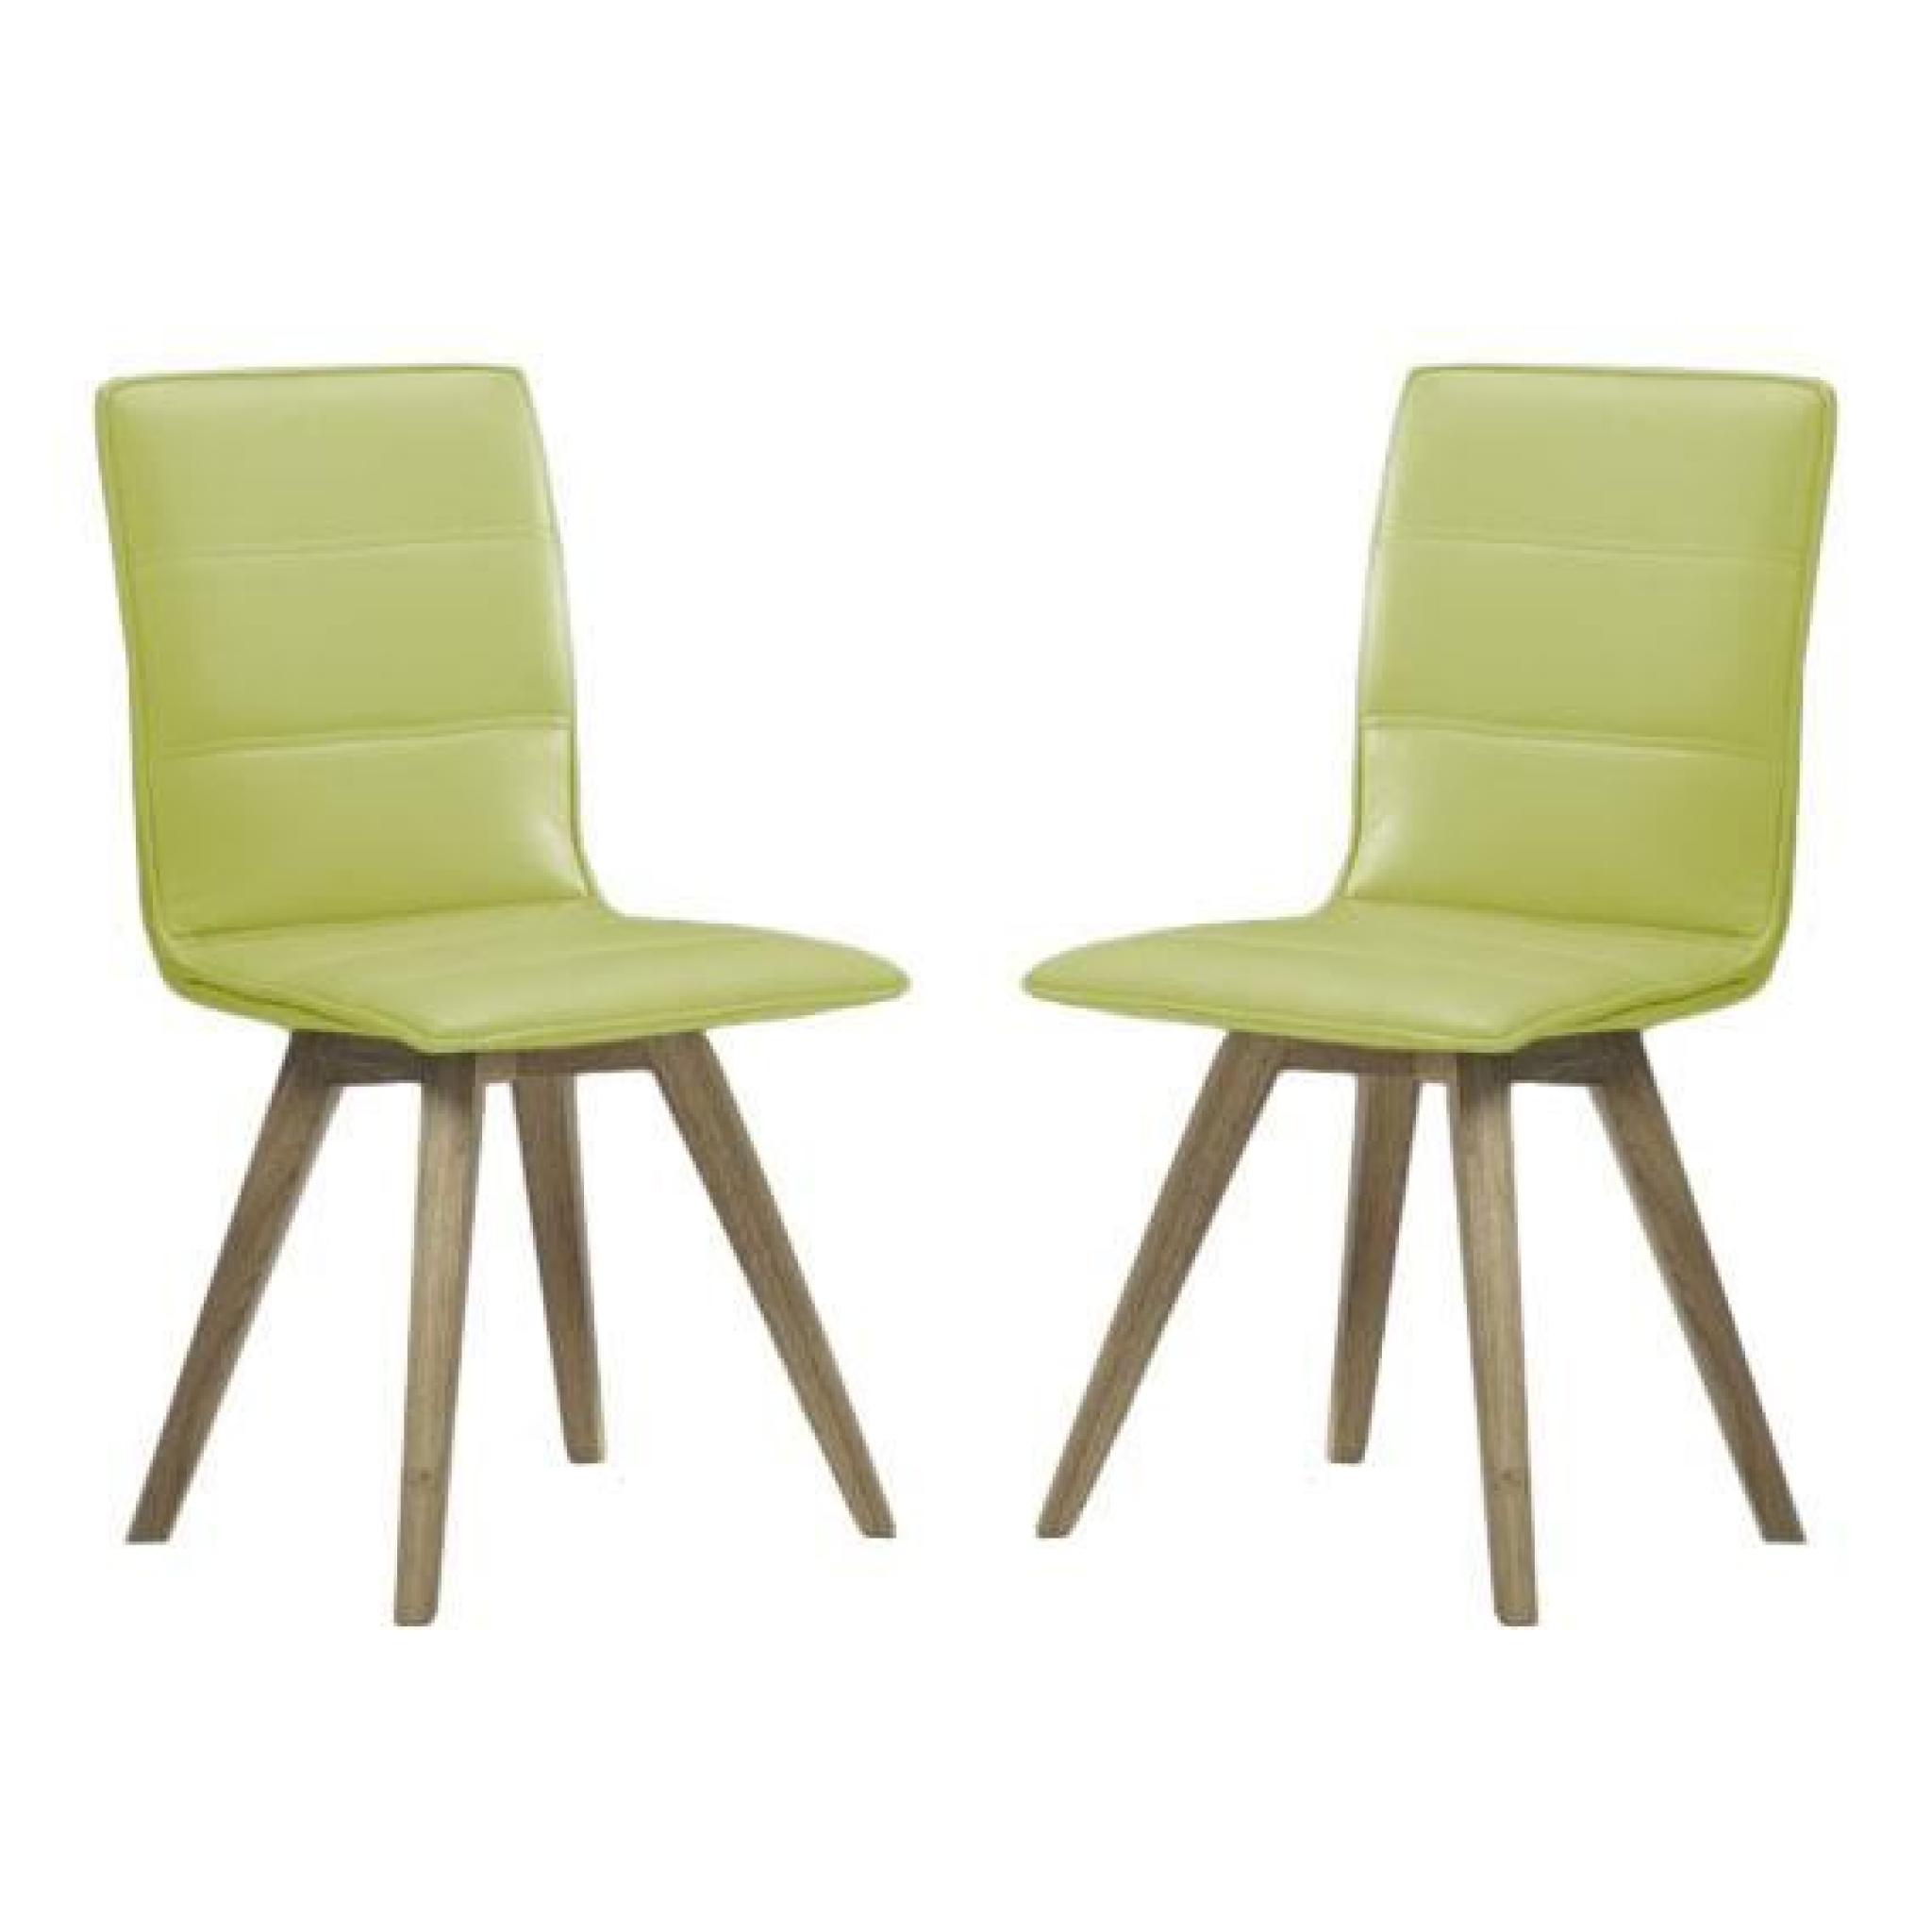 Chaise avec pieds en hévéa massif et revêtement polyuréthane - Lot de 2 LEICESTER-Turquoise